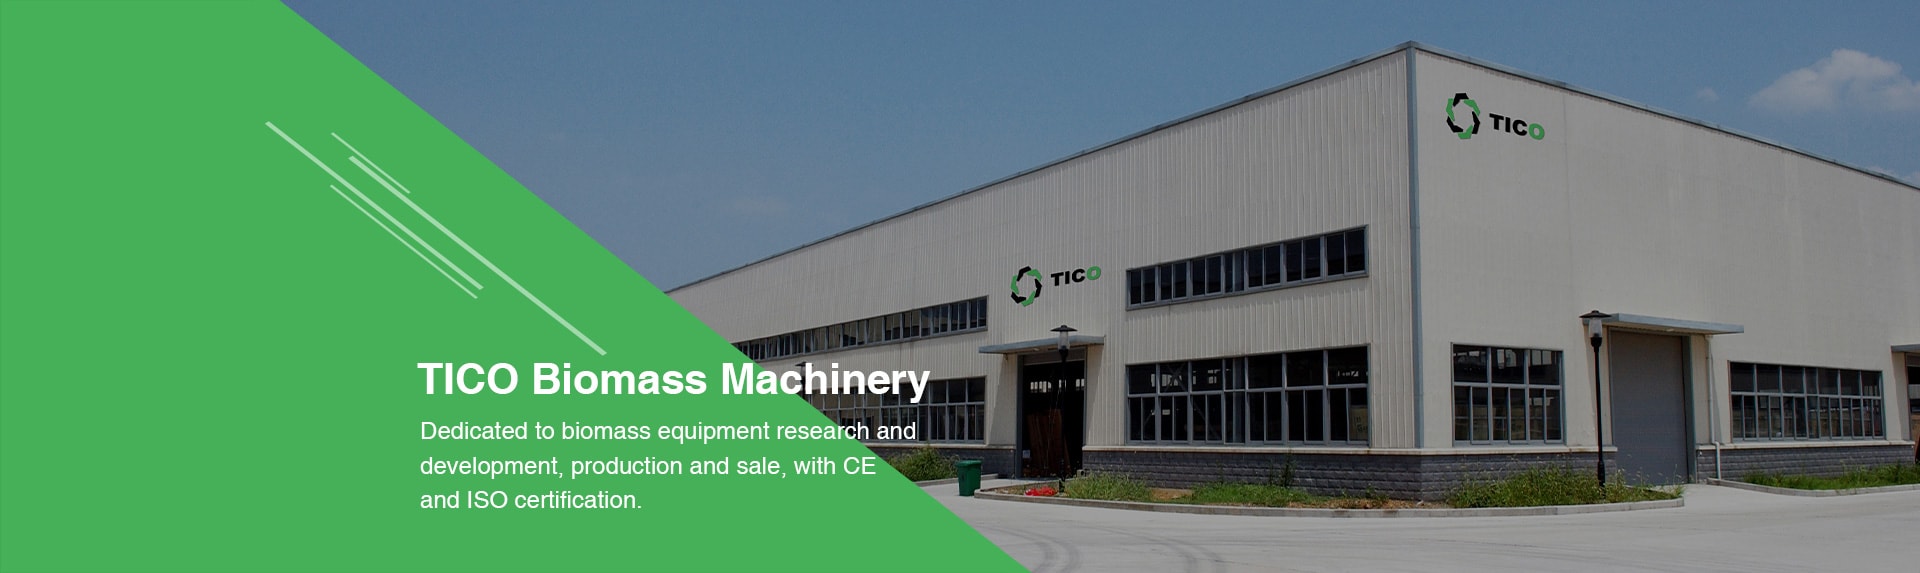 professional biomass machinery manufacture